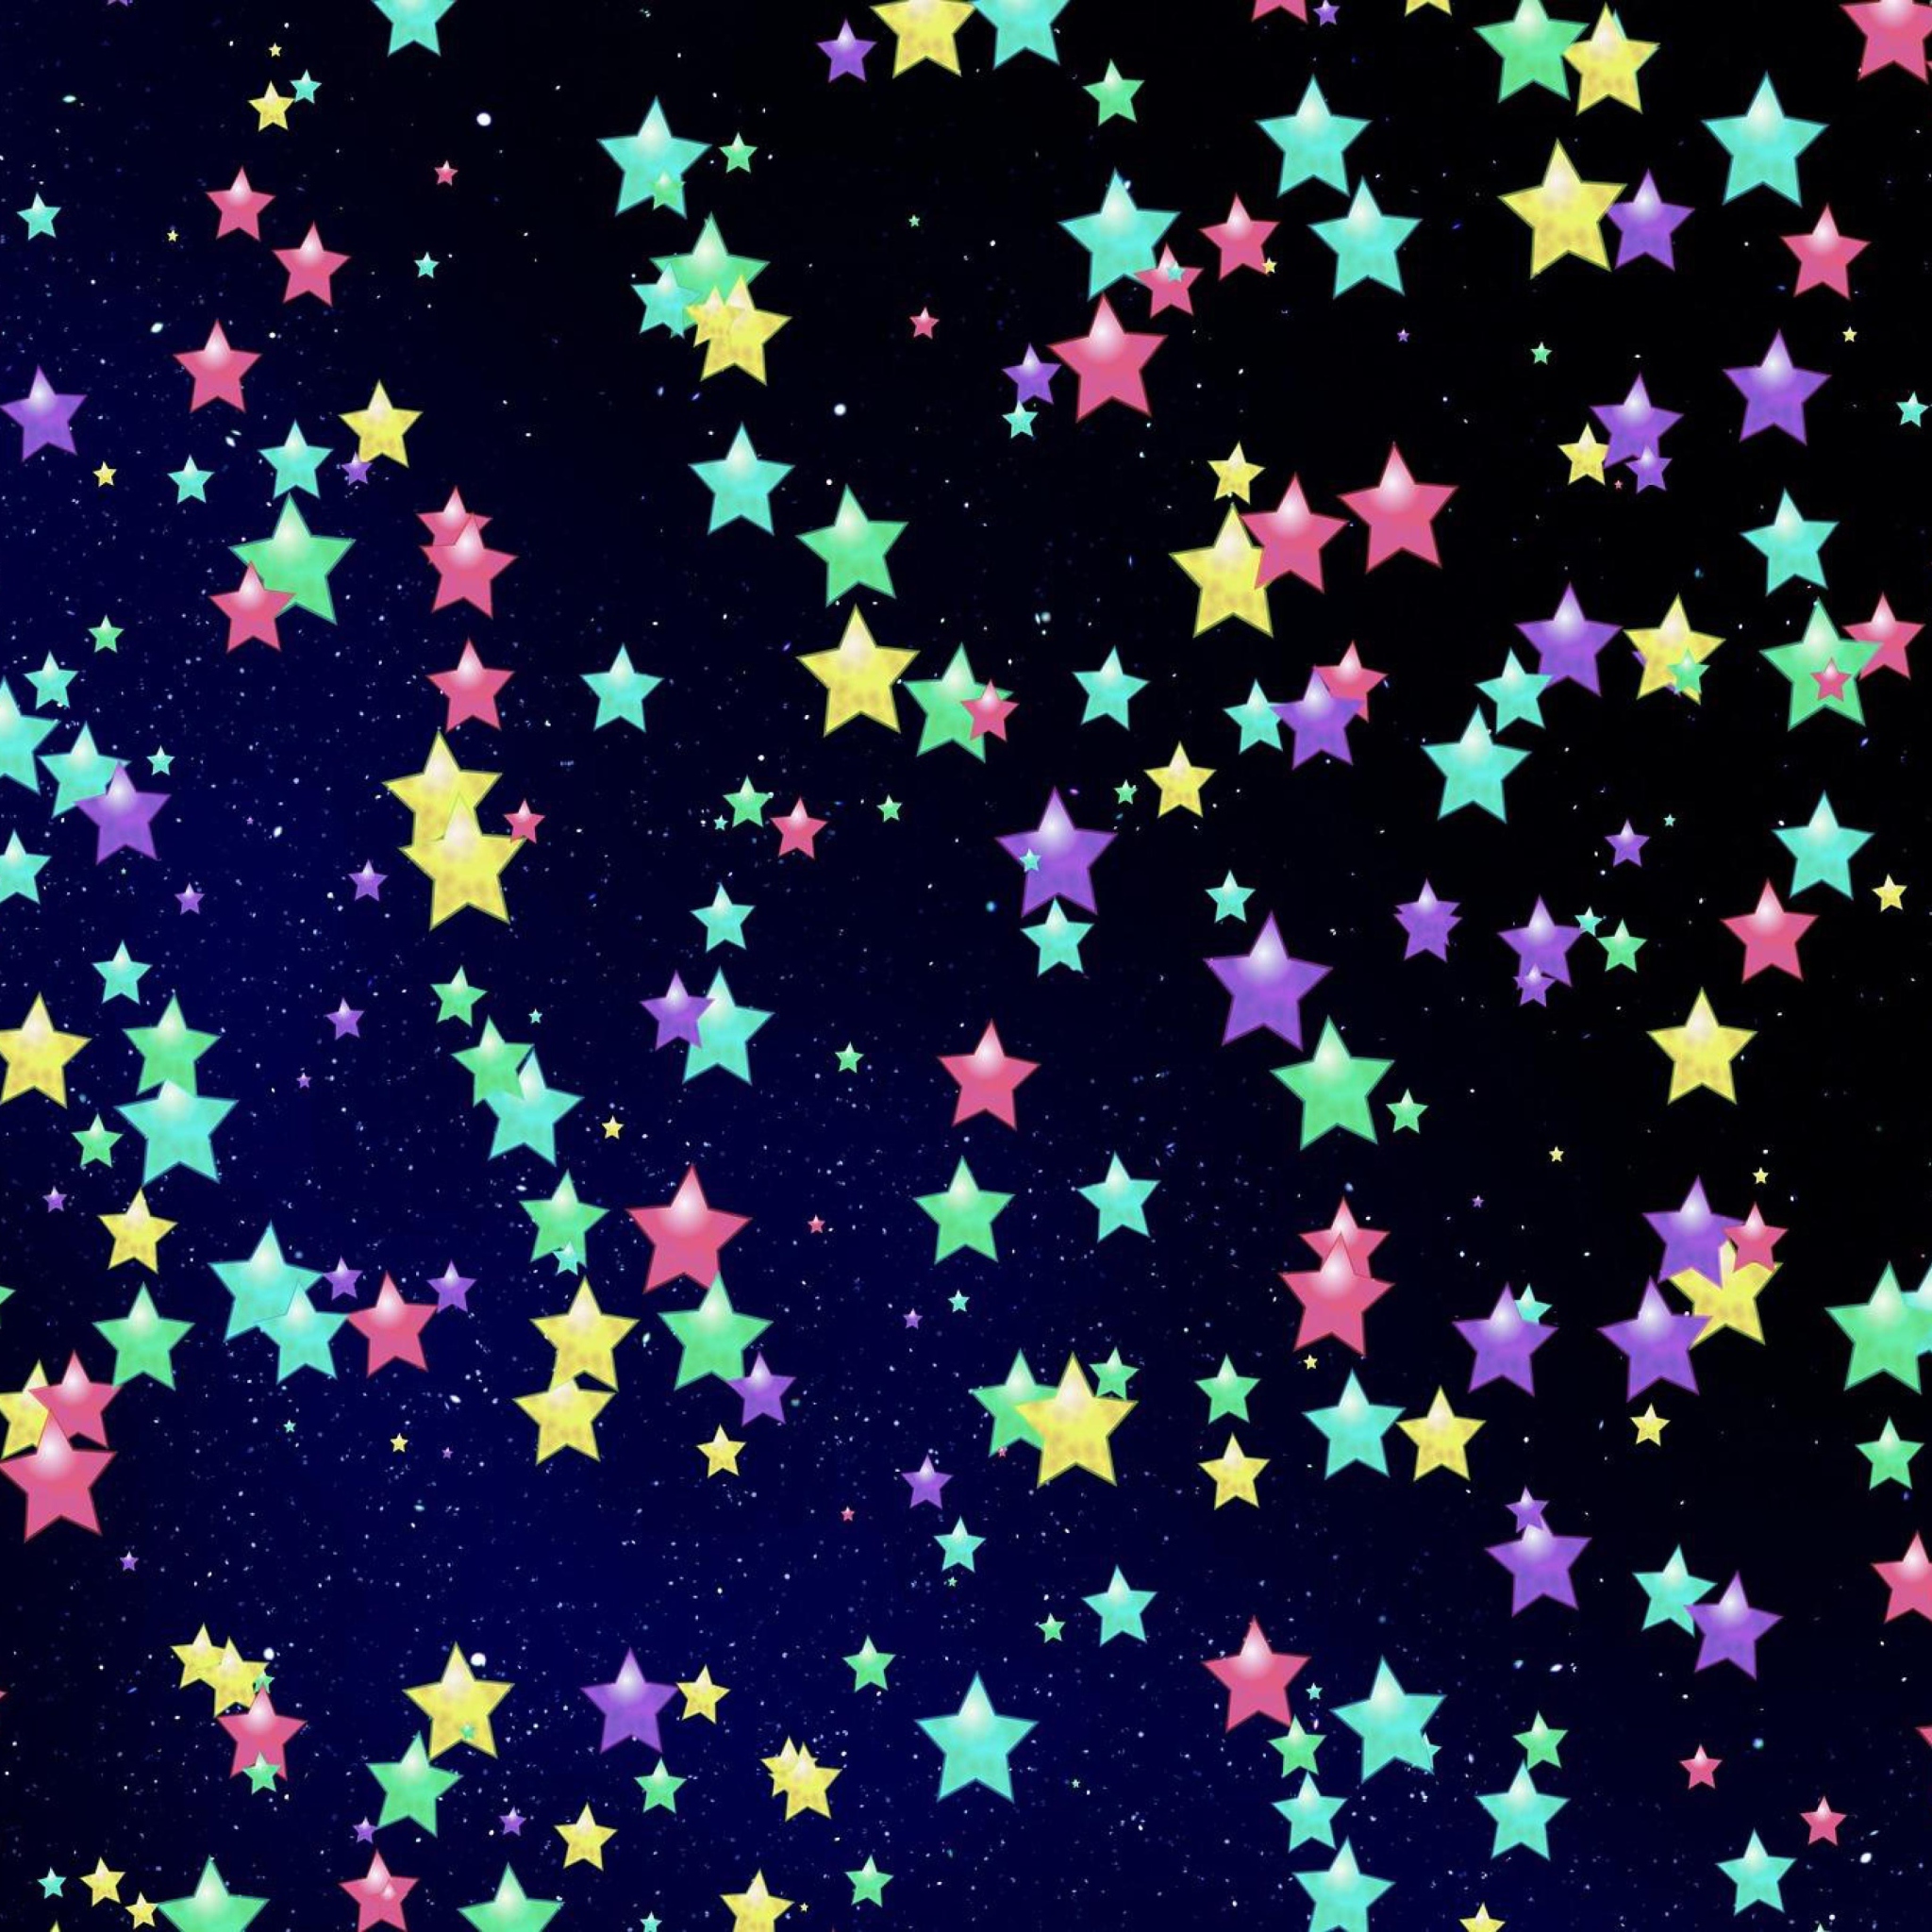 Das Colorful Stars Wallpaper 2048x2048